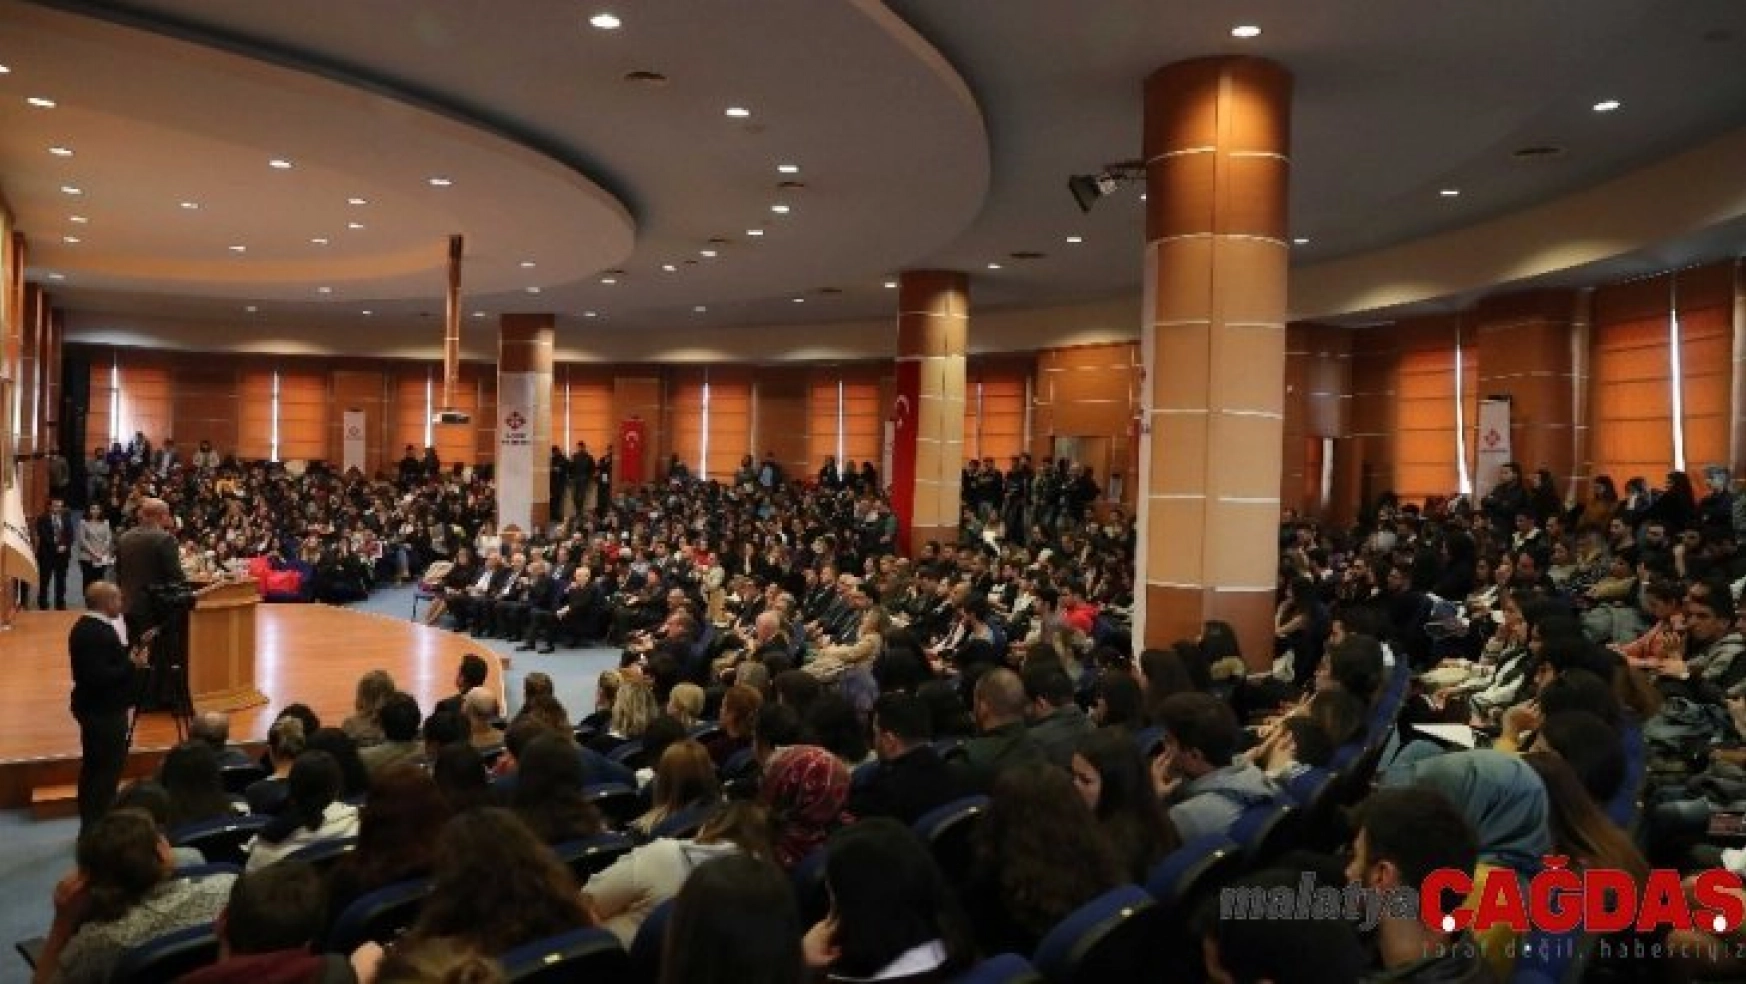 Uluslararası Ankara Marka Buluşmaları, Başkent Üniversitesinde tanıtıldı